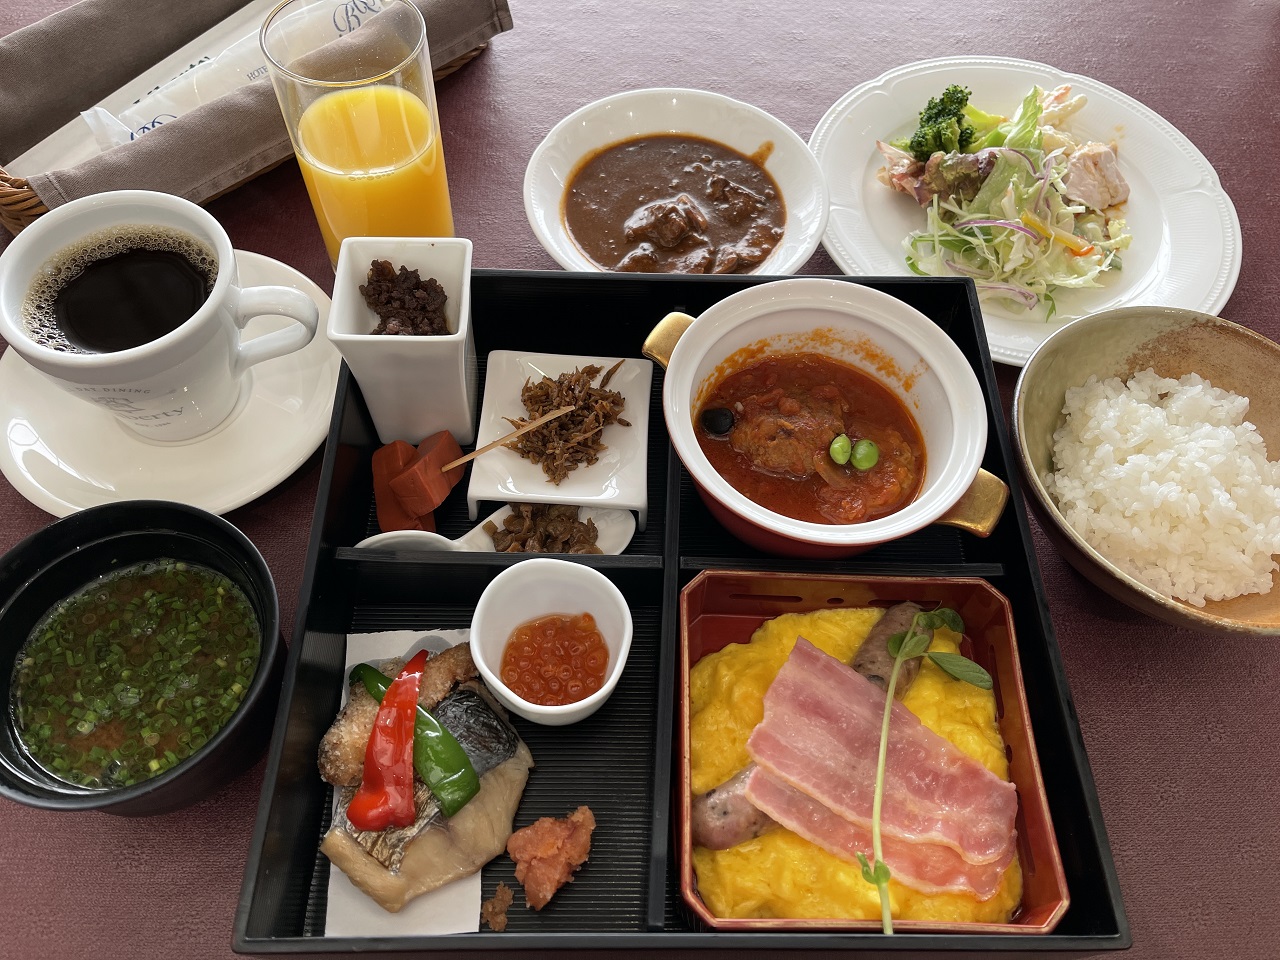 滋賀県草津市のボストンプラザホテル朝食